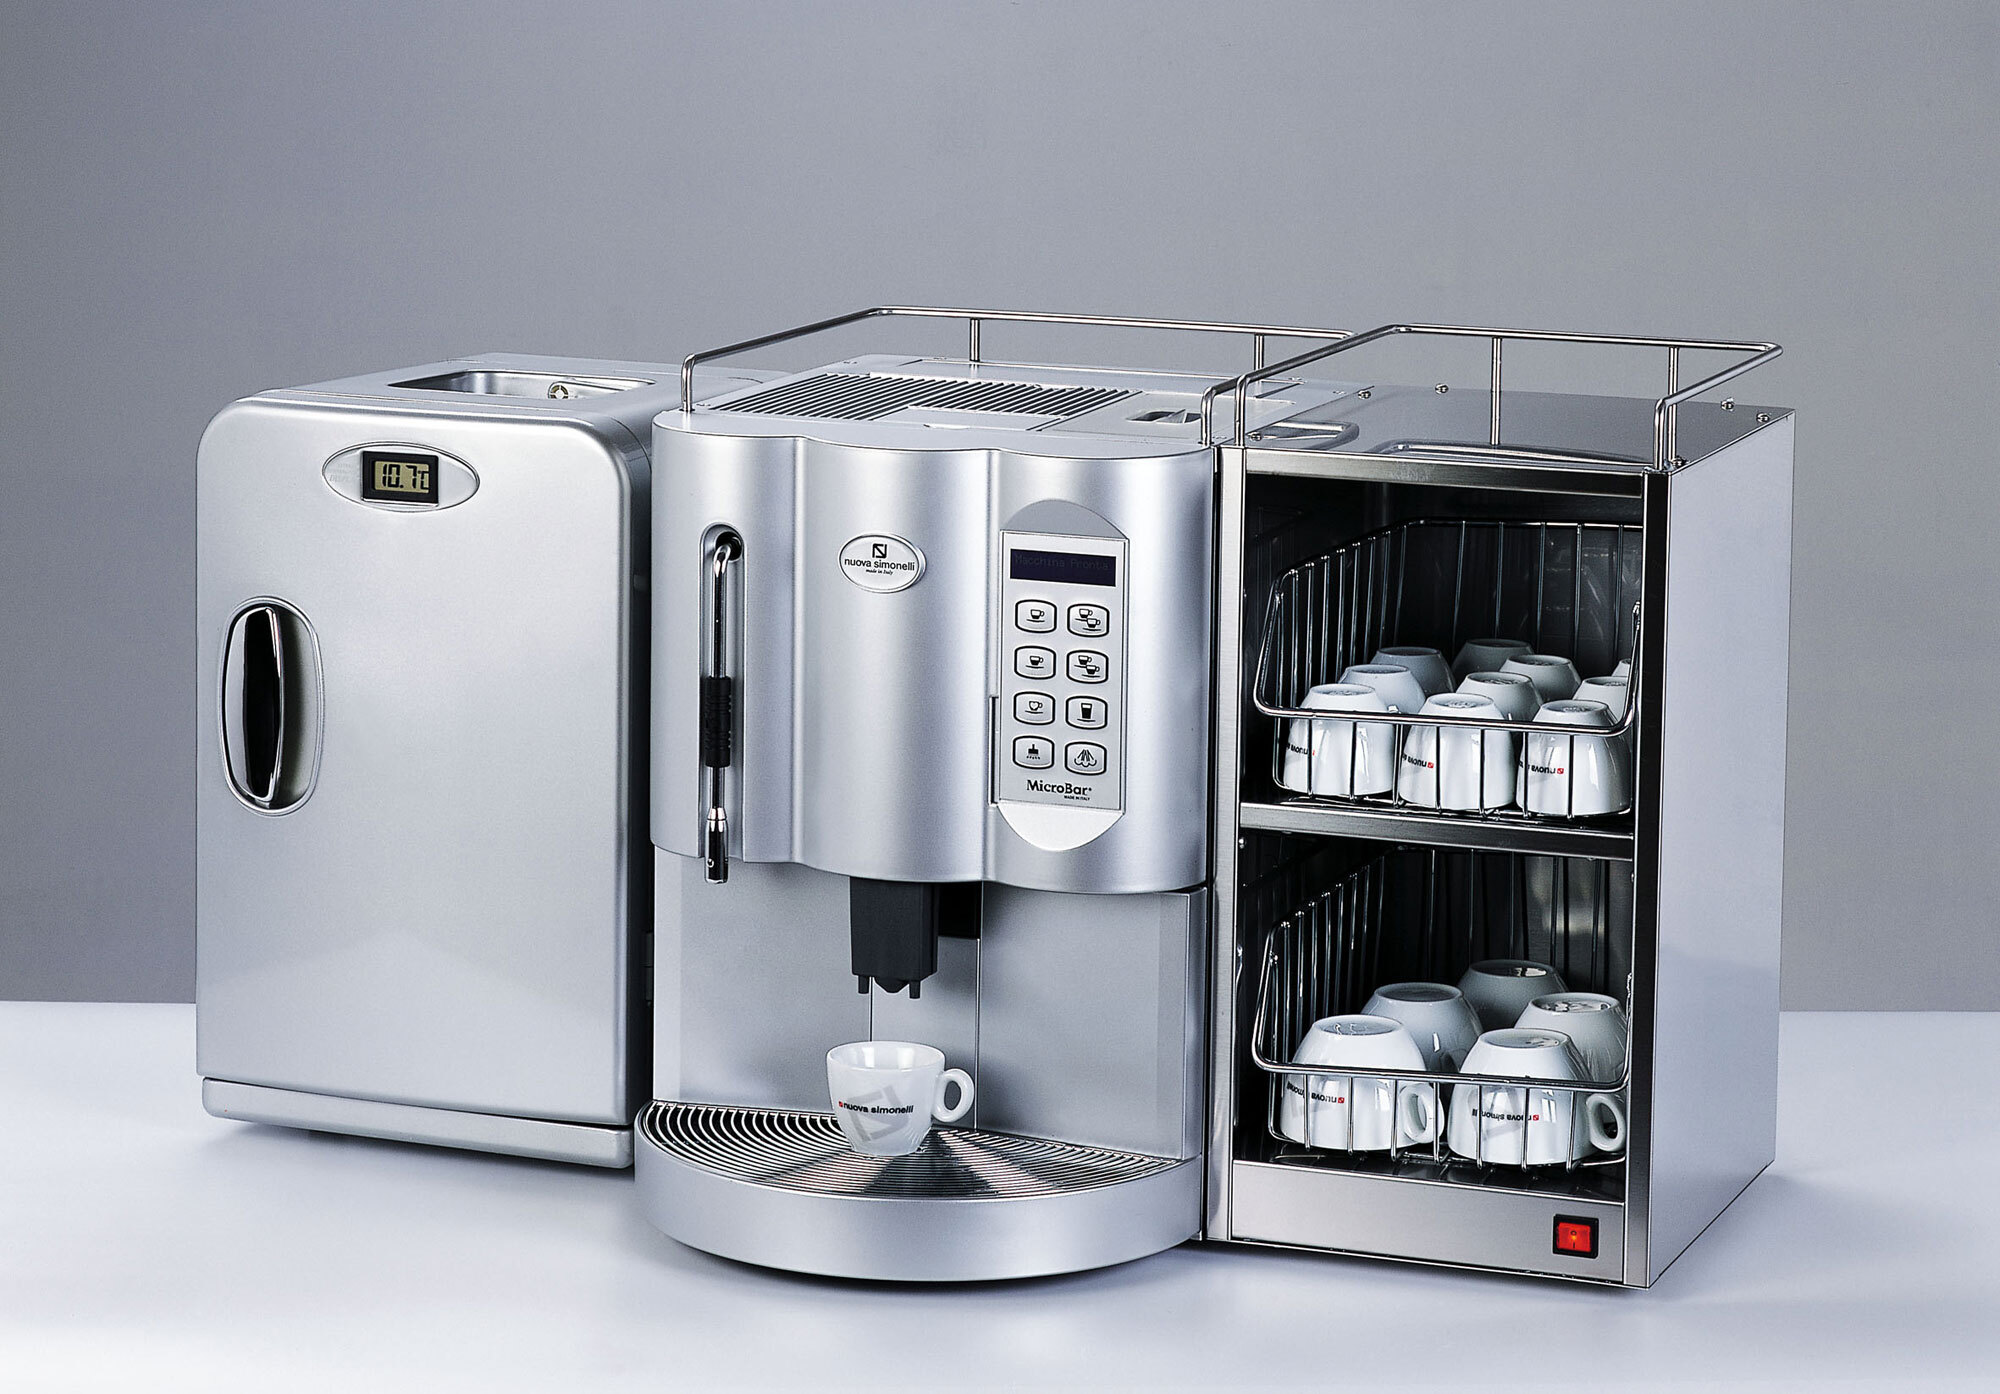 Hình ảnh chiếc máy pha cà phê Nuova Simonelli Microbar II